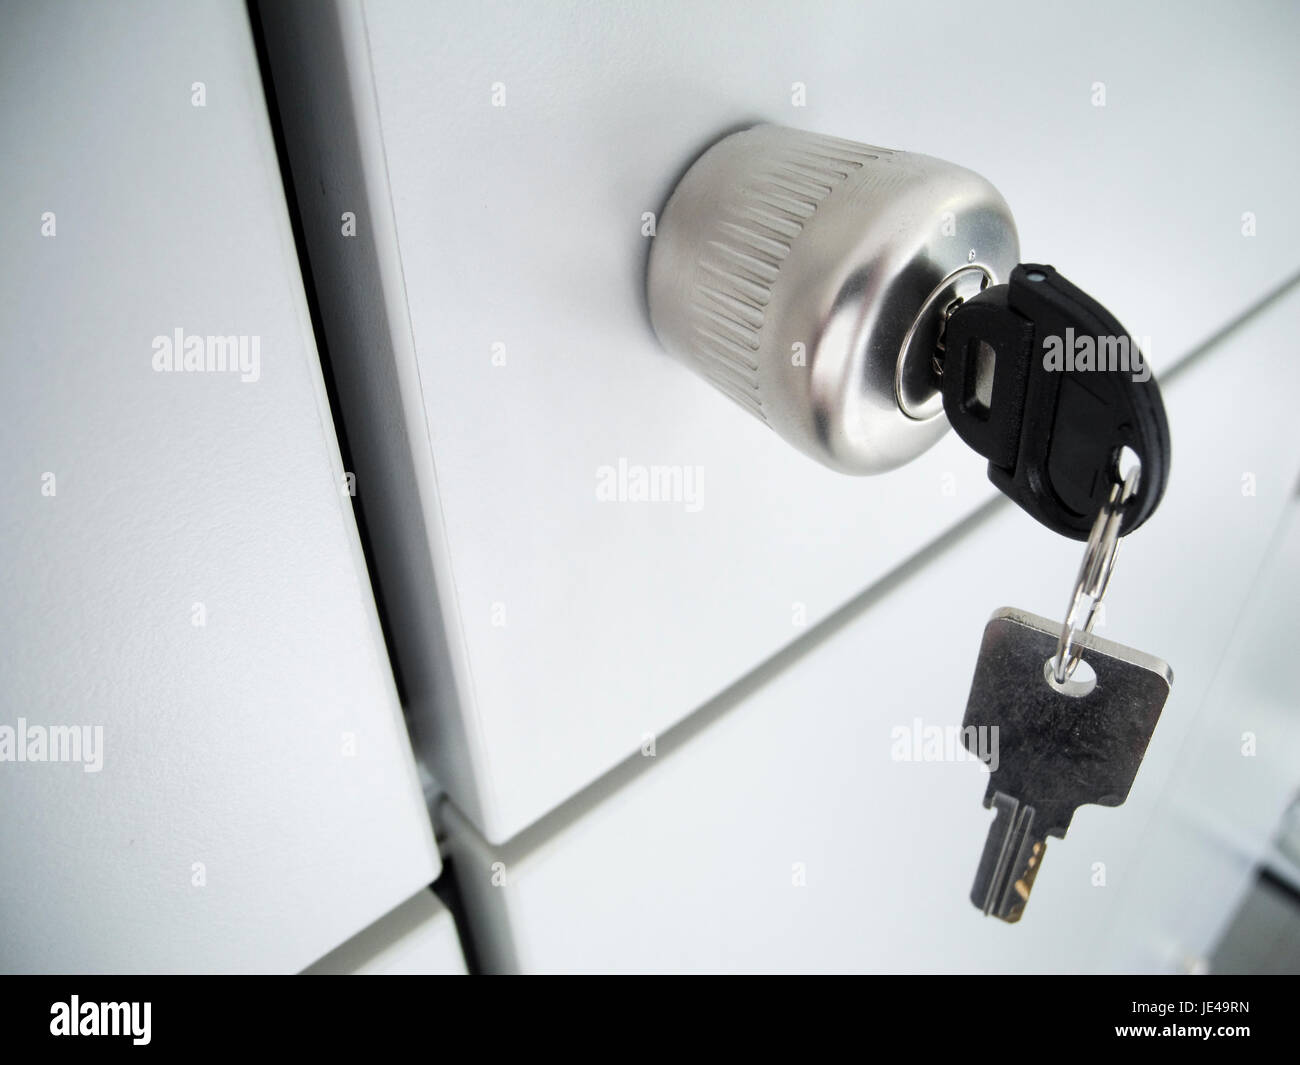 Detailaufnahme einer grauen Schranktür mit rundem Griff und steckenden und hängenden Schlüssel sowie sich kreuzende Abstandsspalten in Schrägansicht Stock Photo